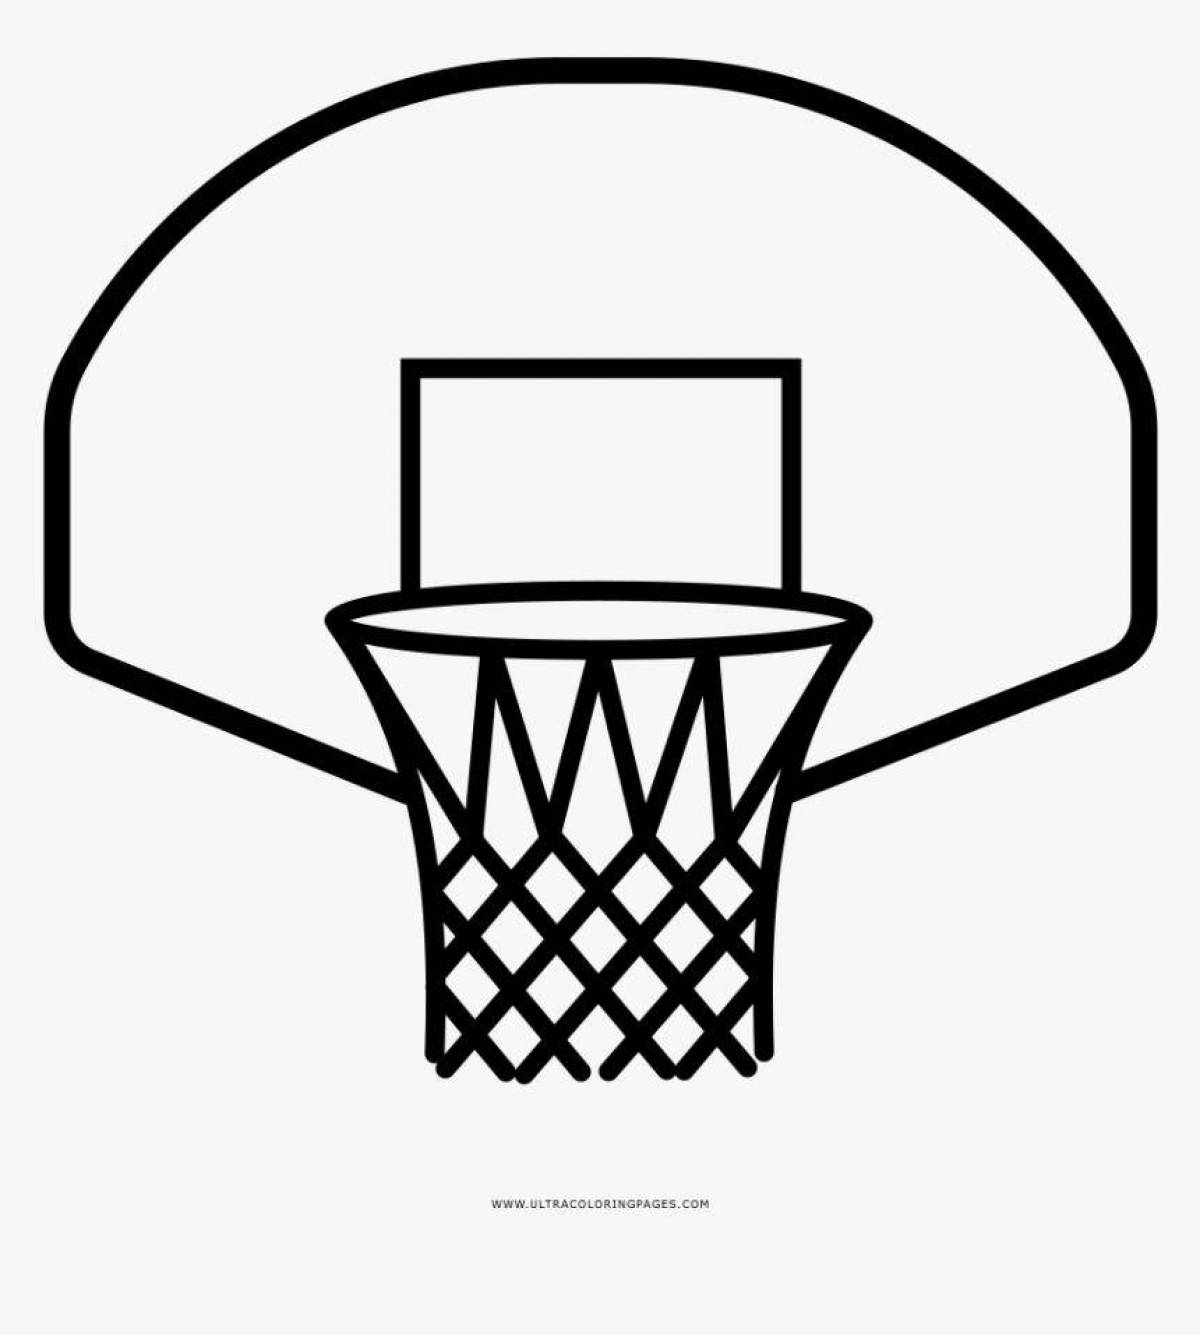 Милая страница раскраски баскетбольного кольца